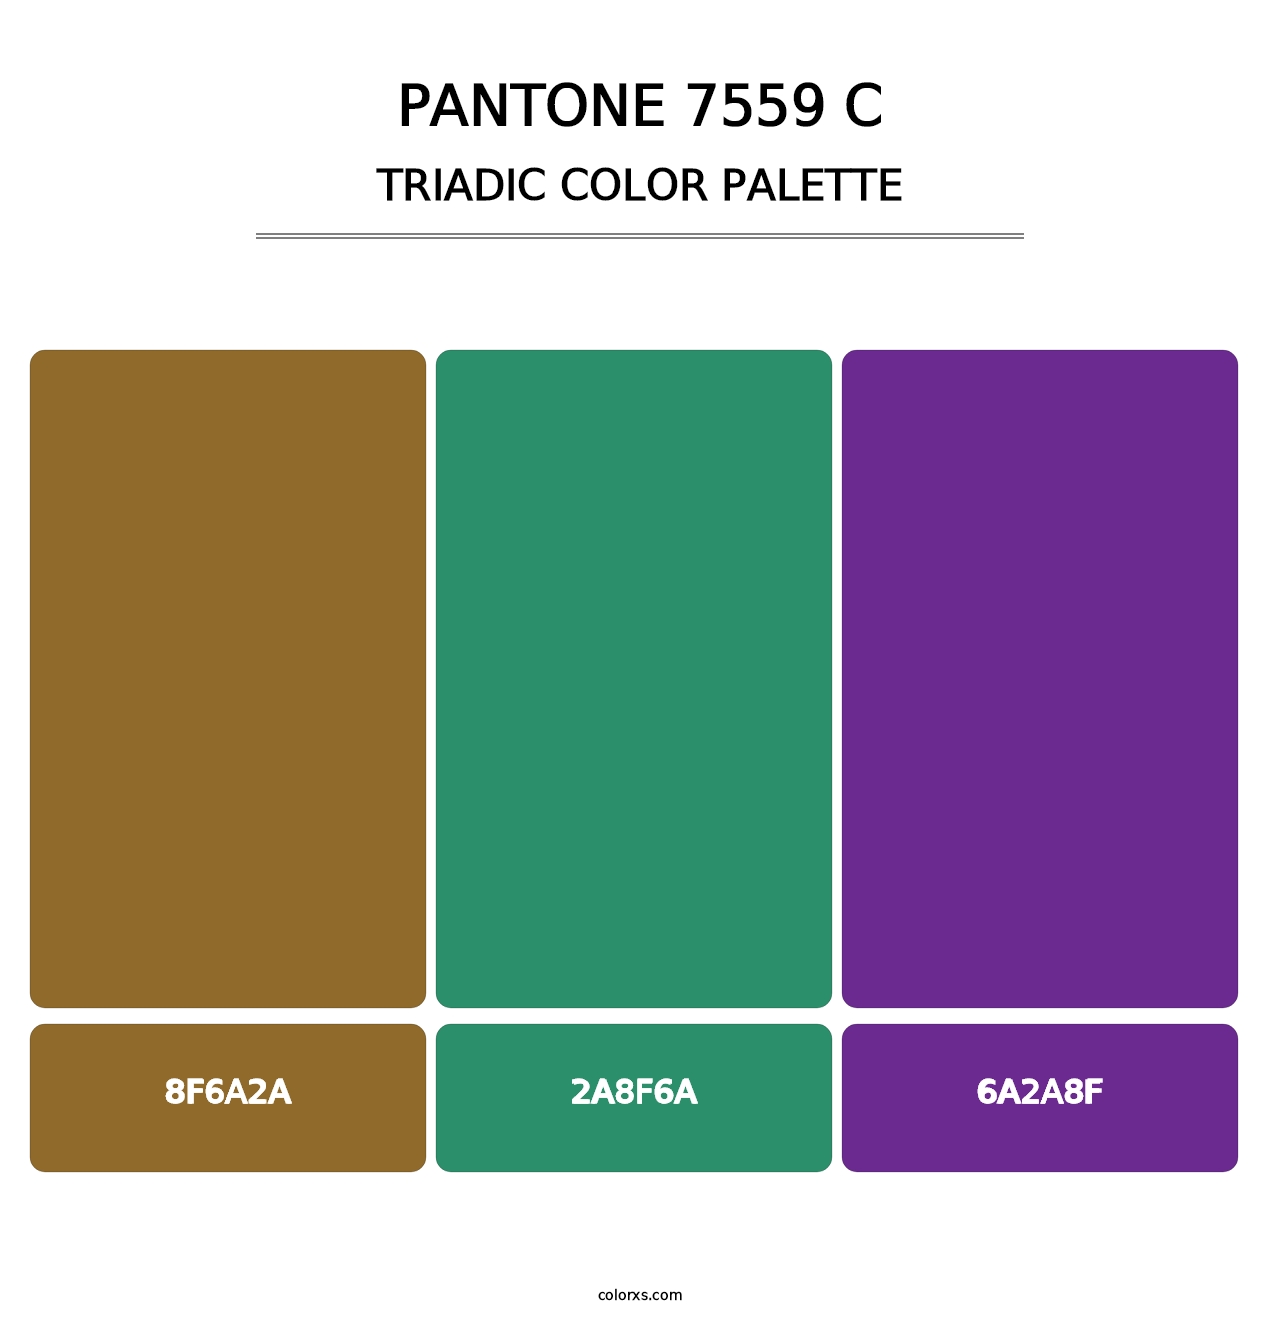 PANTONE 7559 C - Triadic Color Palette